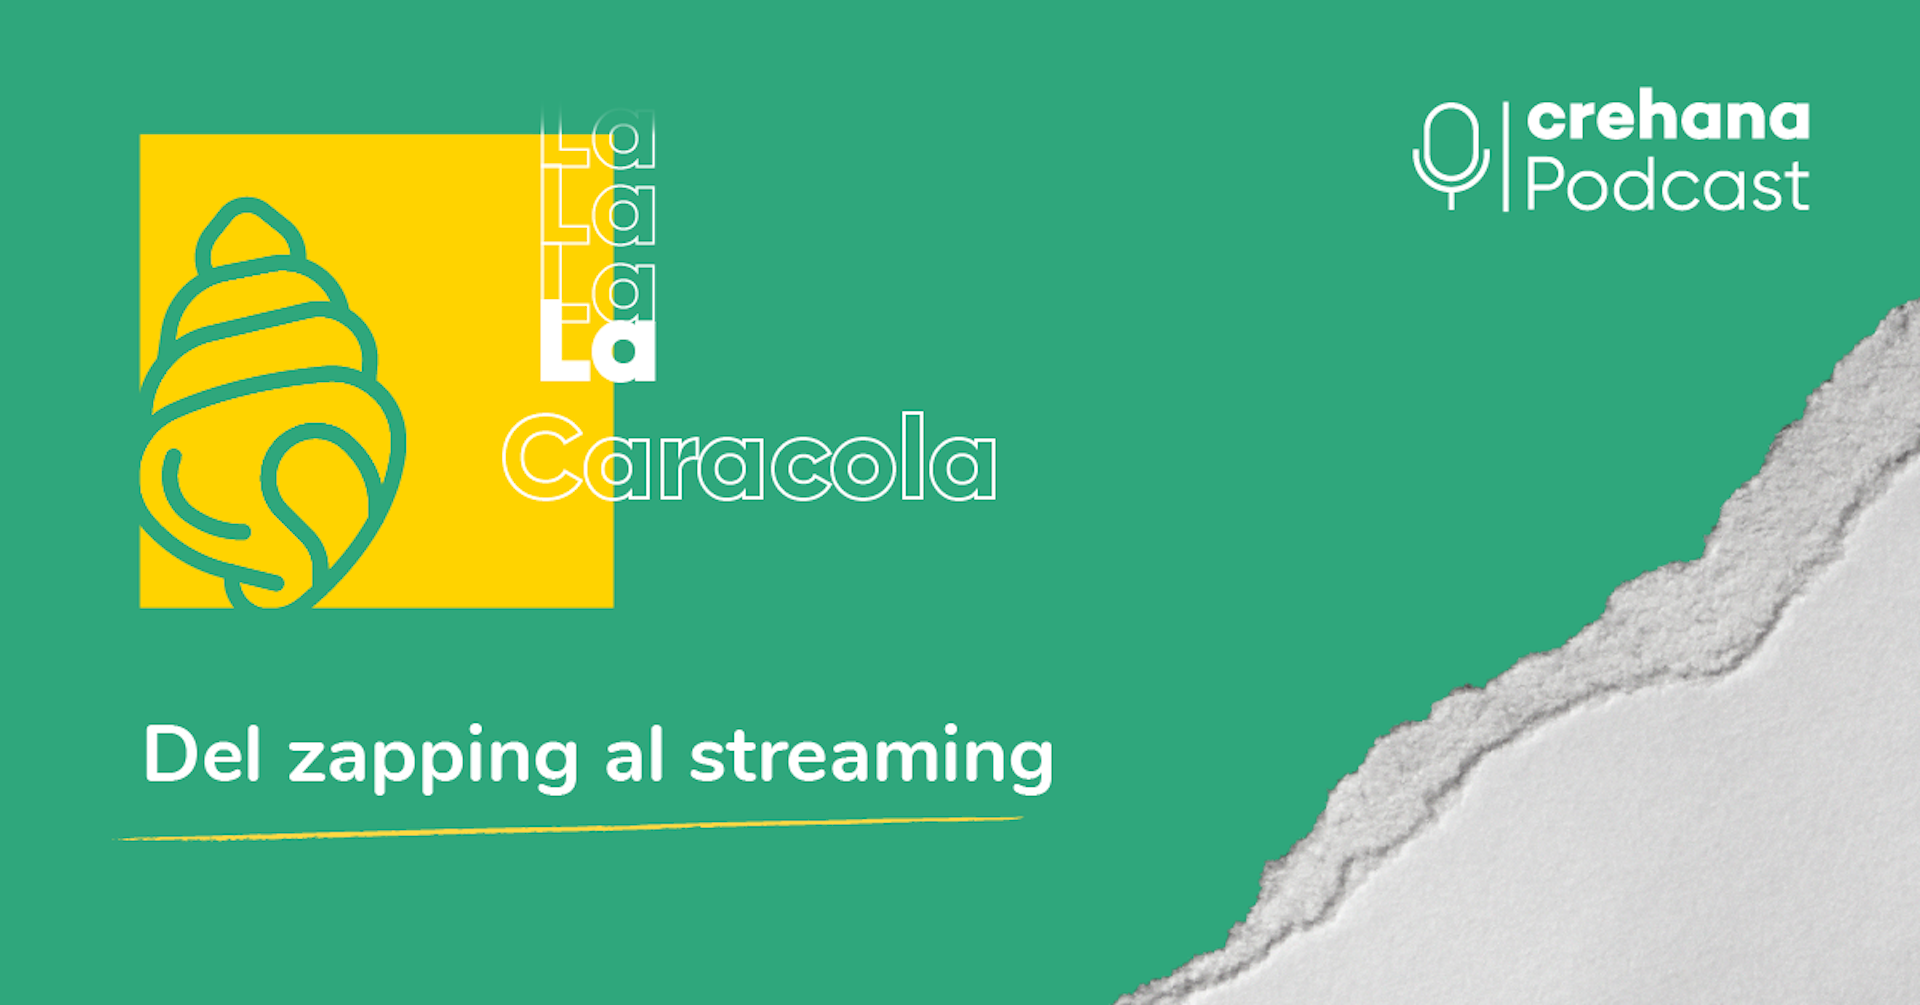 La Caracola, episodio 3: Del zapping al streaming